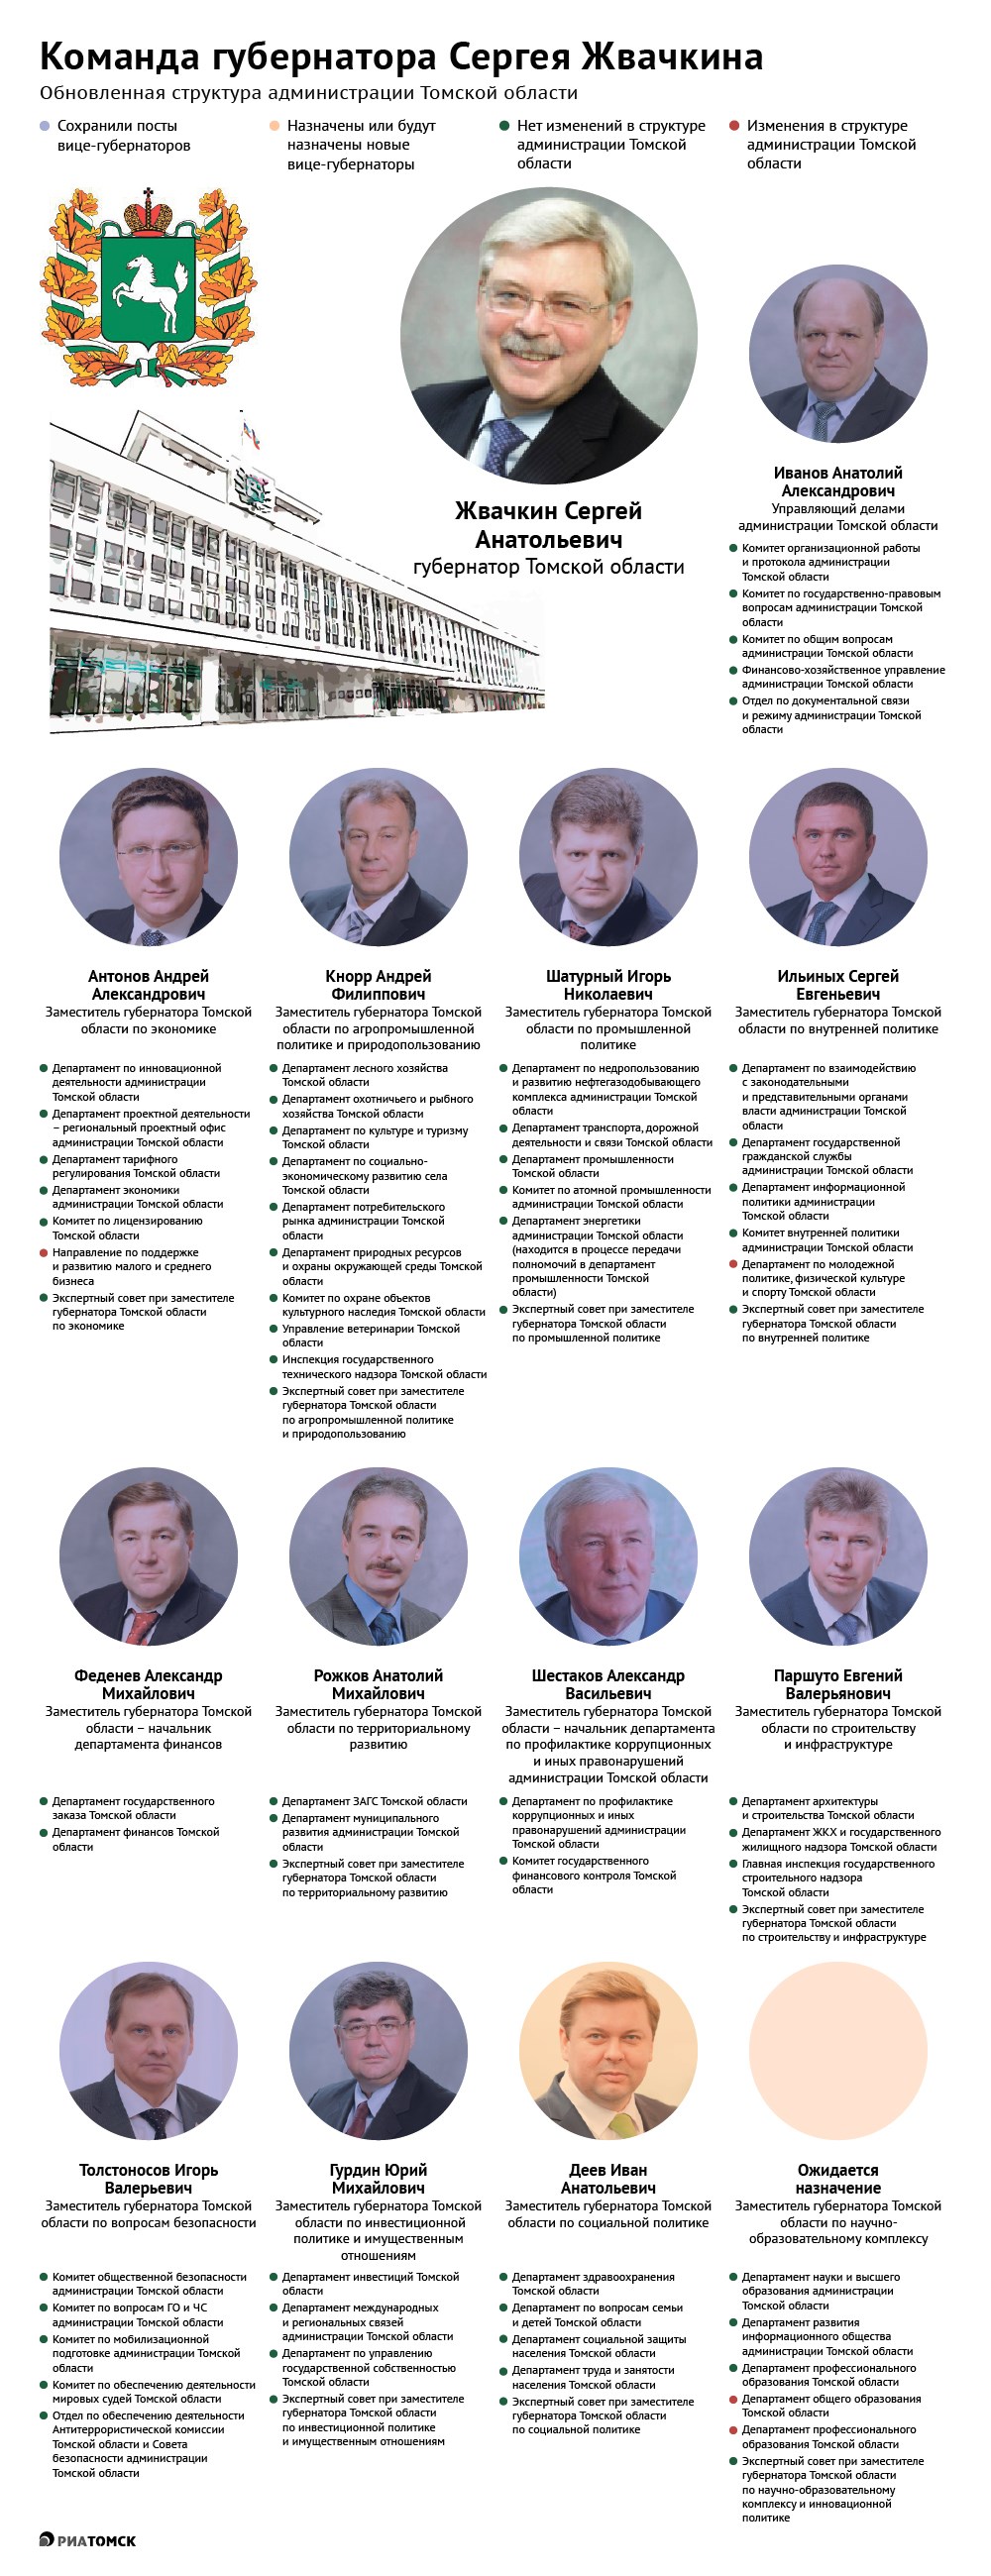 Как изменилась структура администрации Томской области